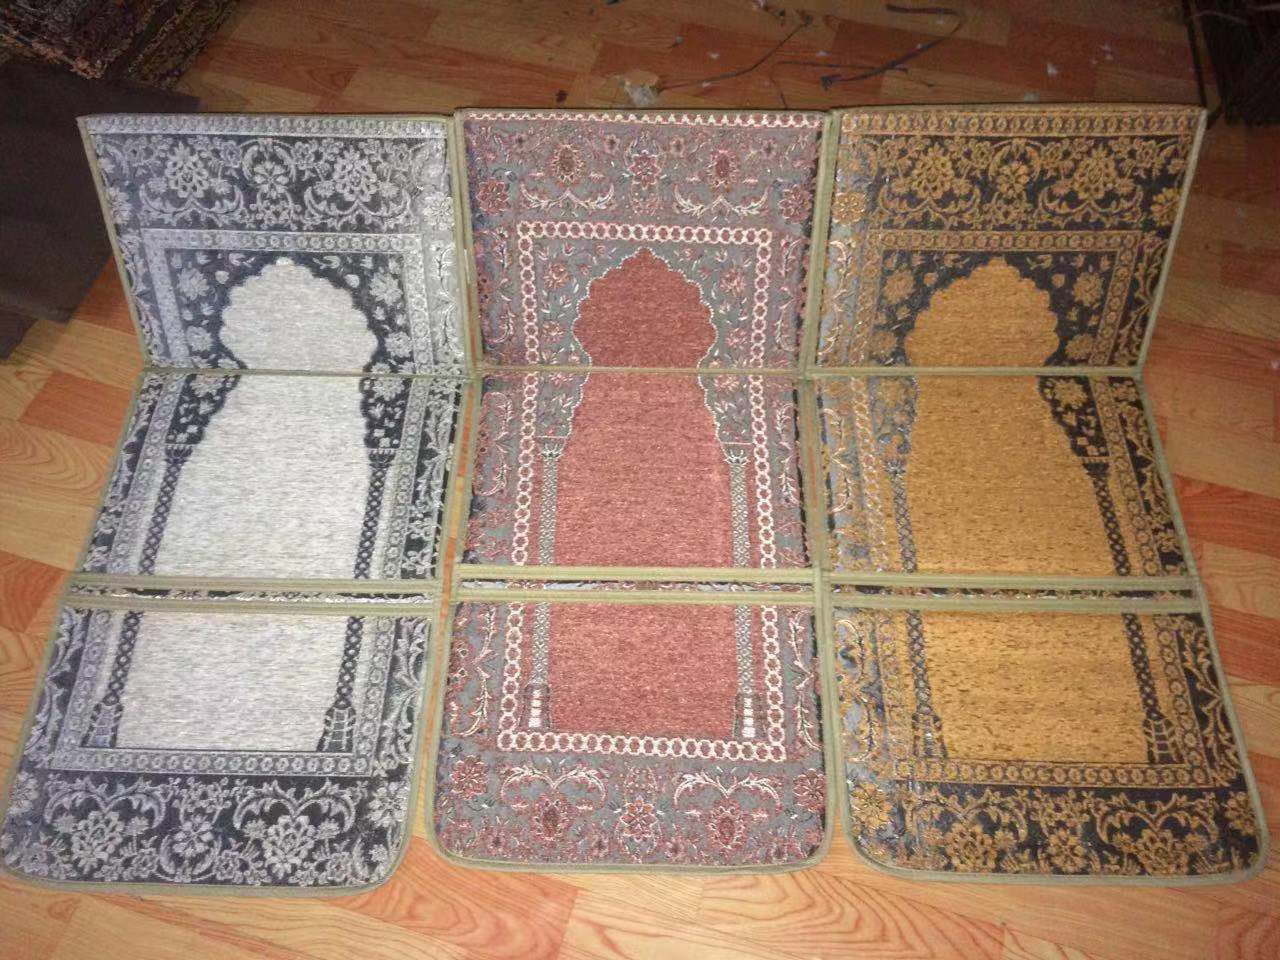 穆斯林礼拜毯伊斯兰教礼拜毯中东祈祷垫压花印花礼拜毯折叠礼拜毯